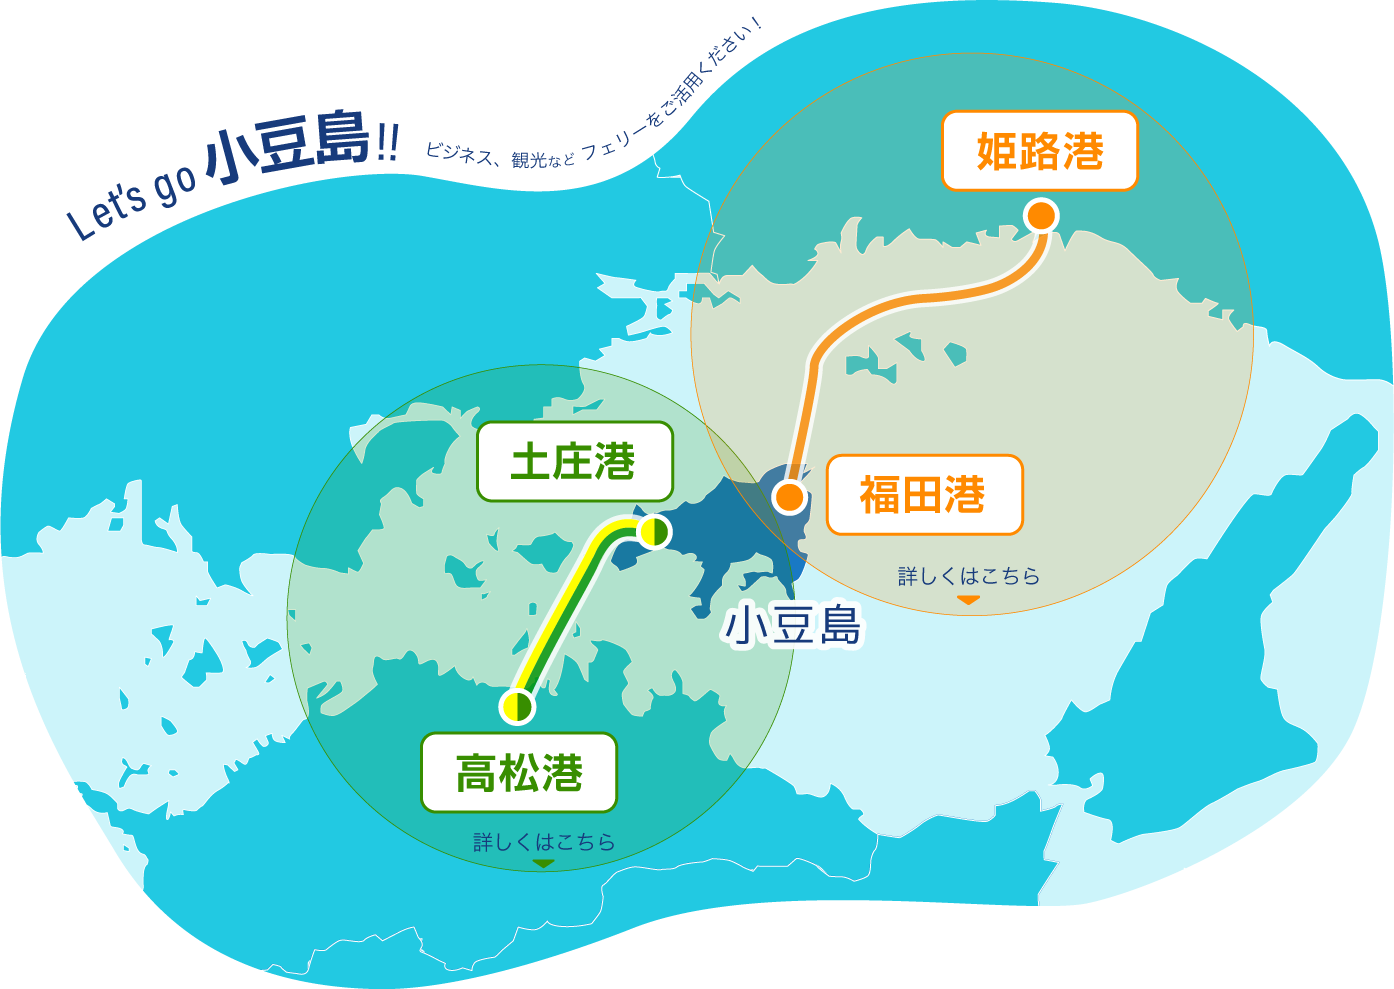 運行ルート　「Let's go 小豆島！！ビジネス、観光など フェリーをご活用ください。」